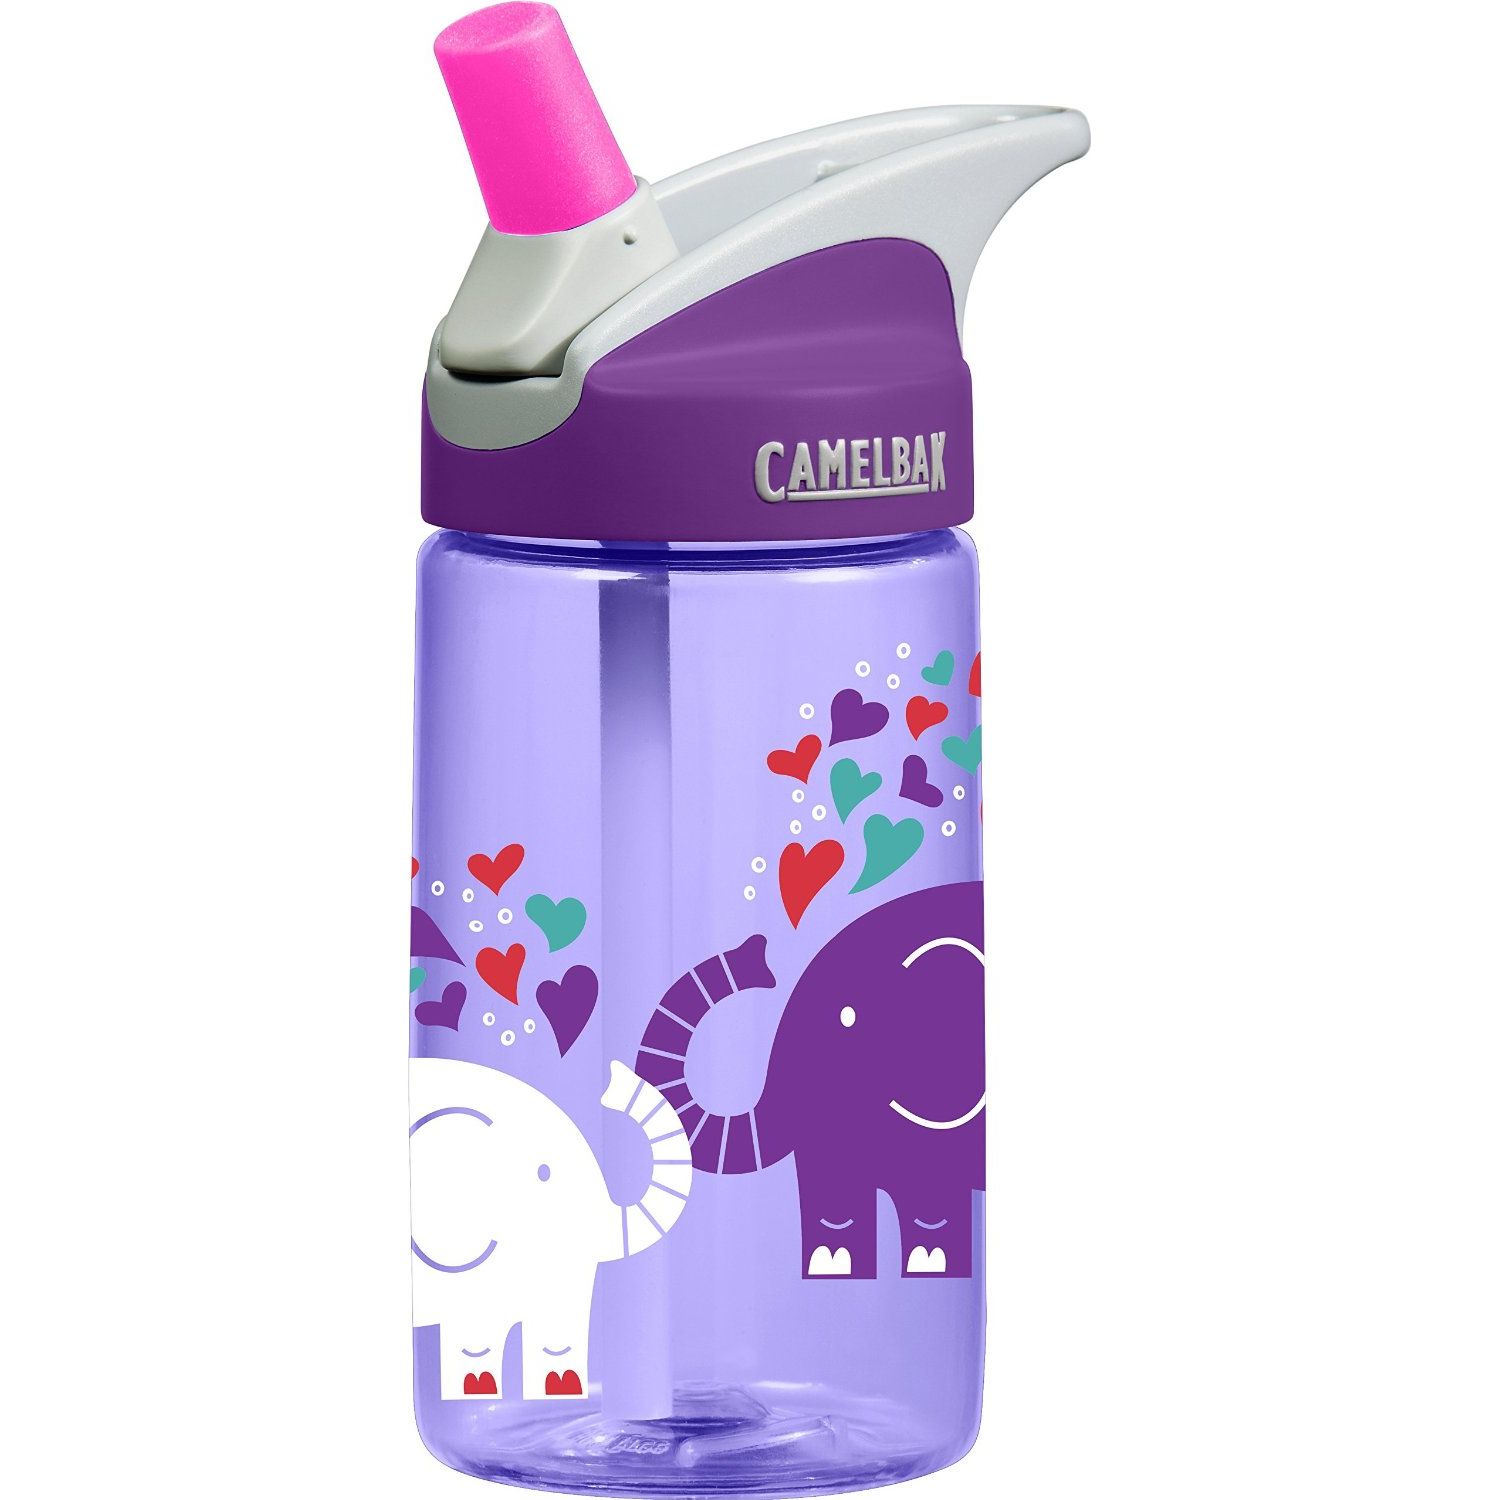  Eddy+ Kids 0,4l Unicorn Party - baby bottle - CAMELBAK -  15.26 € - outdoorové oblečení a vybavení shop